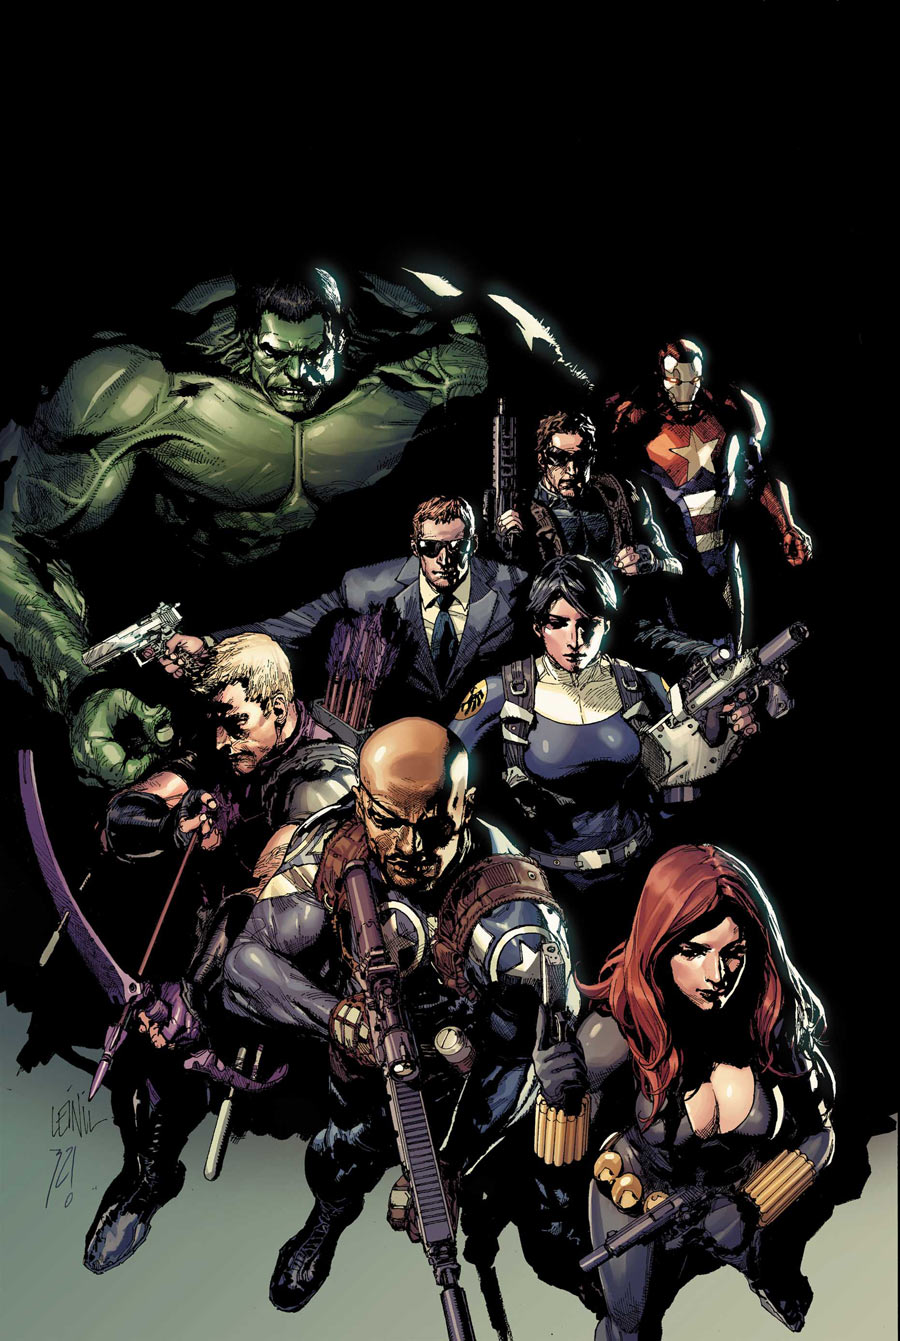 Secret Avengers #14